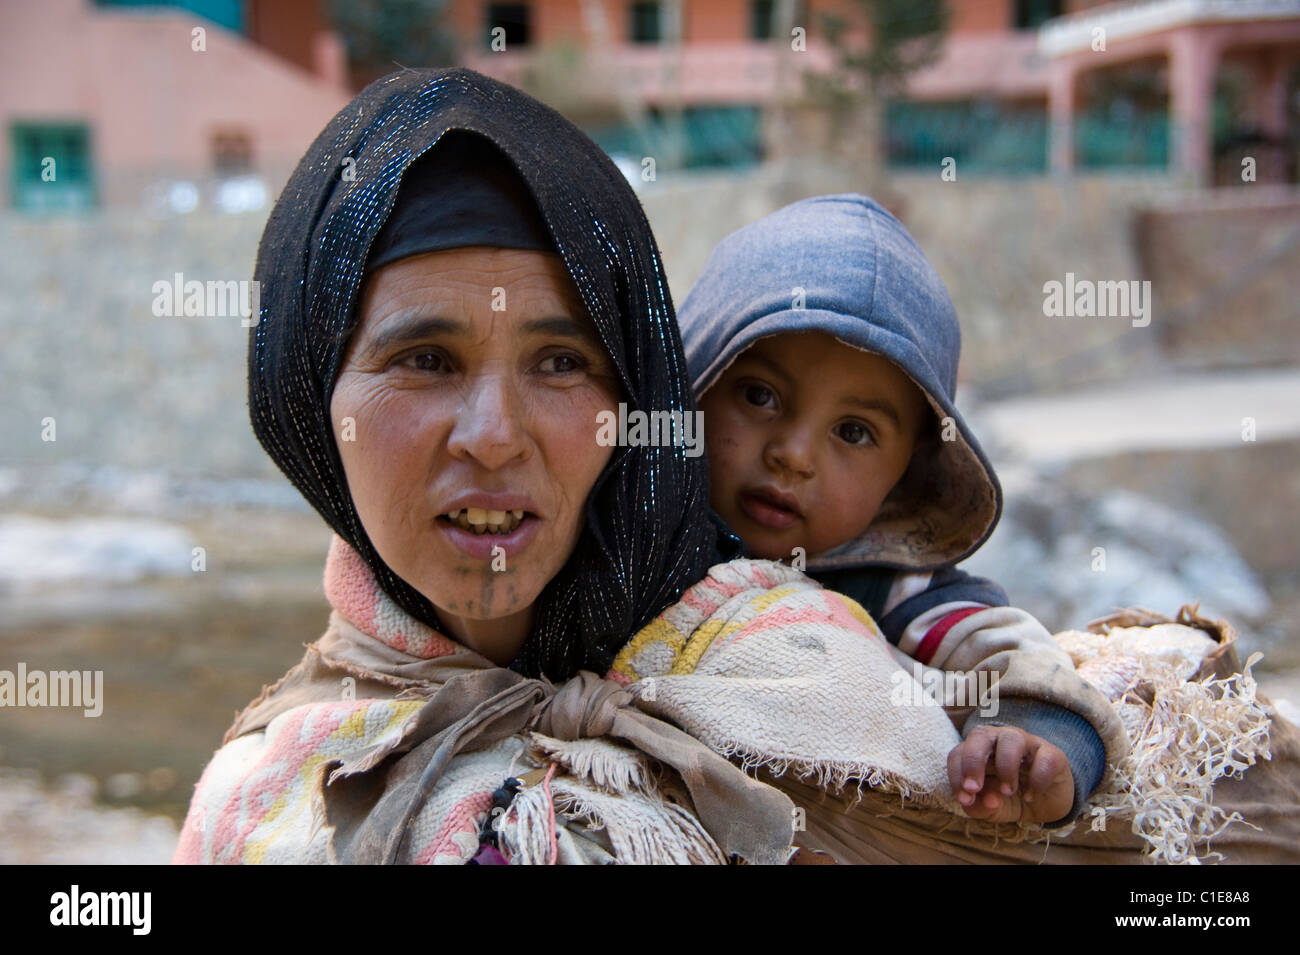 Une femme appelée Eesha berbère et du jeune enfant de la région de Gorges de Todra au Maroc Banque D'Images